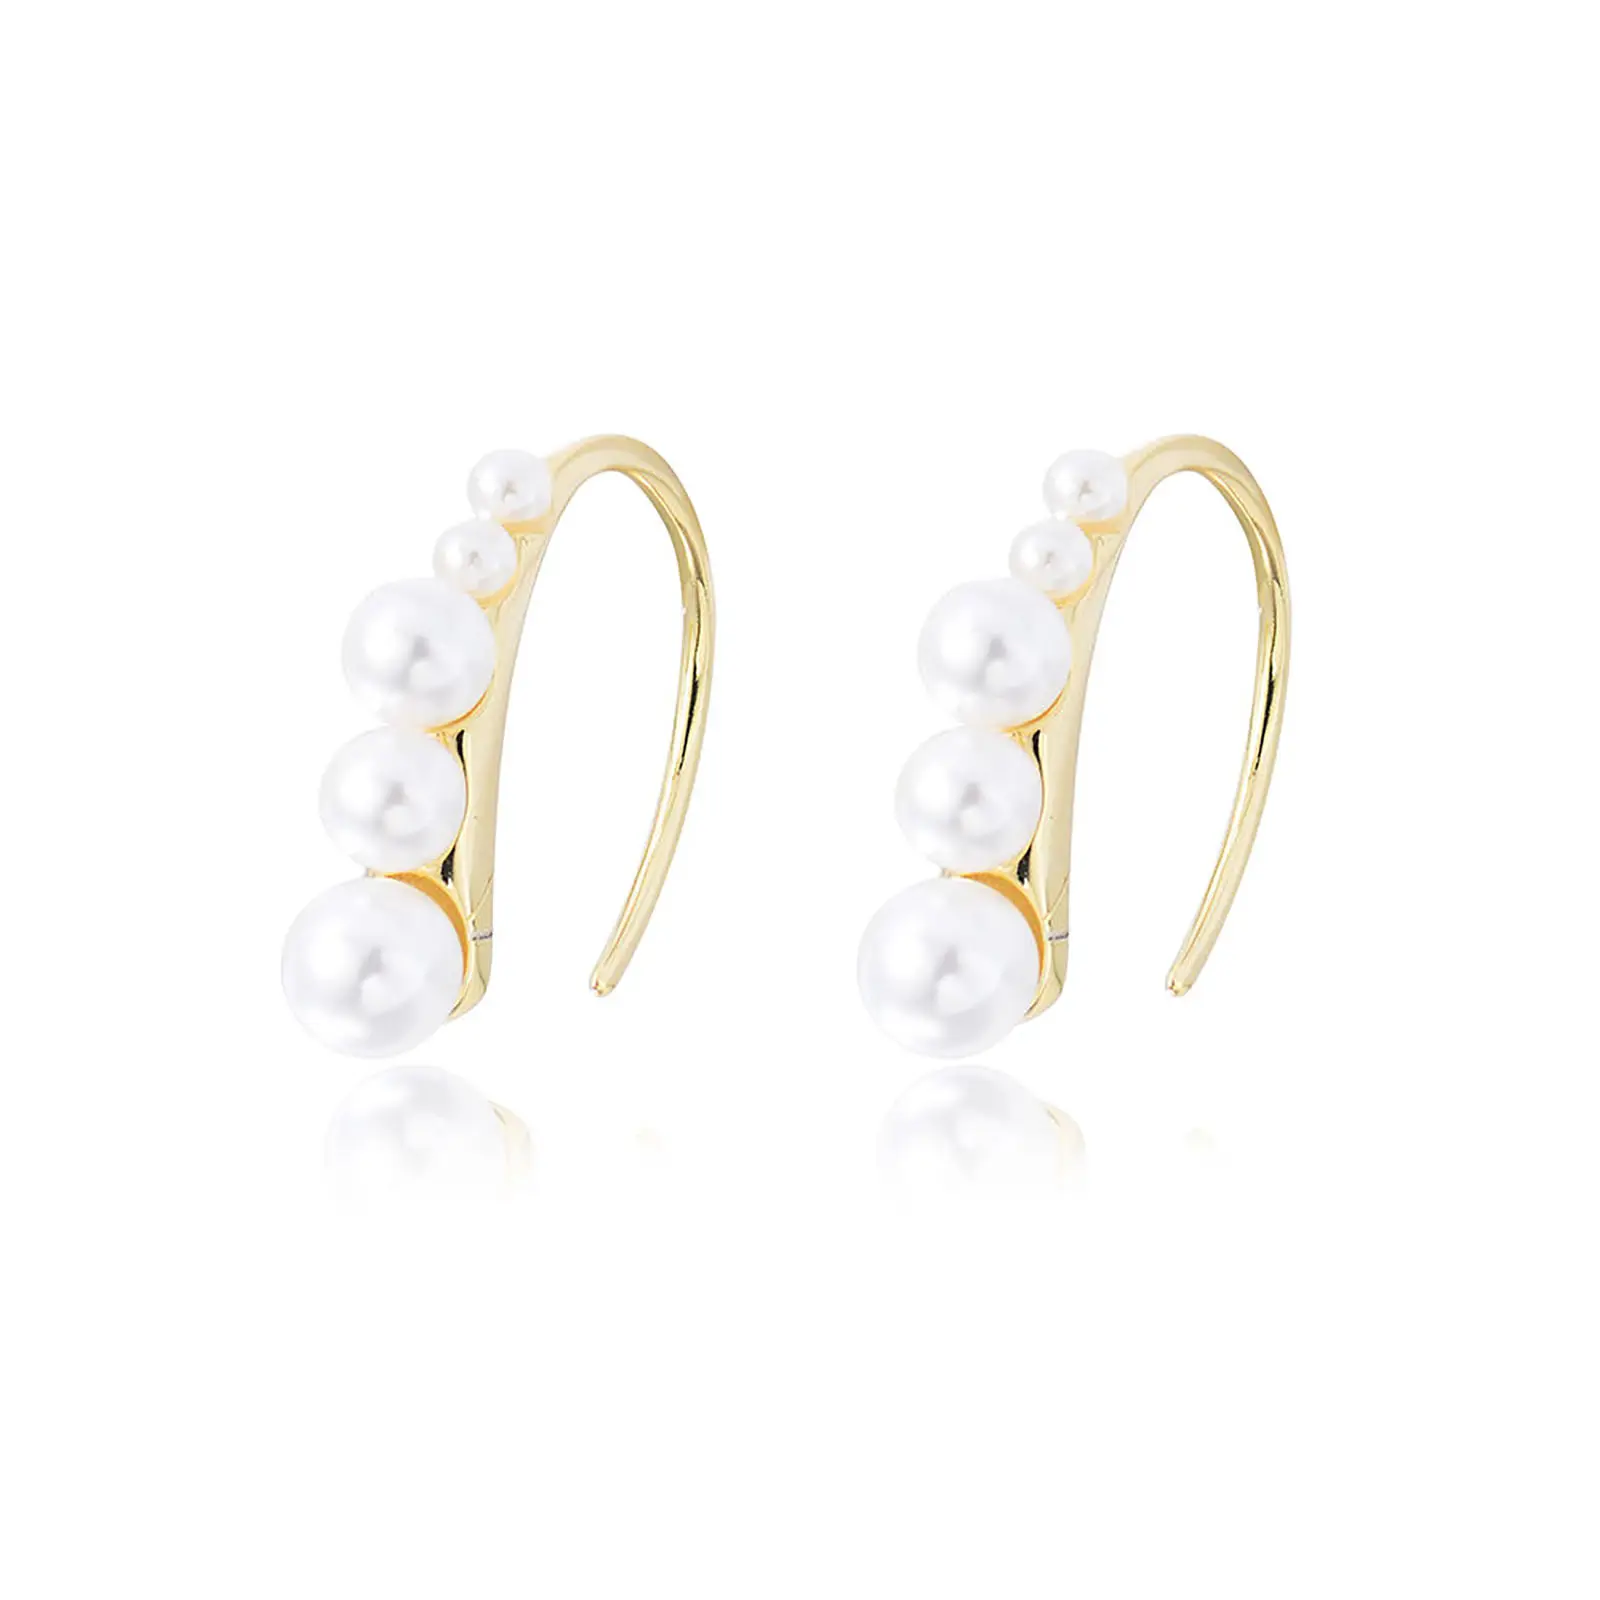 OEM hele jewelry 2022 new arrival popular brand design earring cuff hook hoop imitation pearl earring